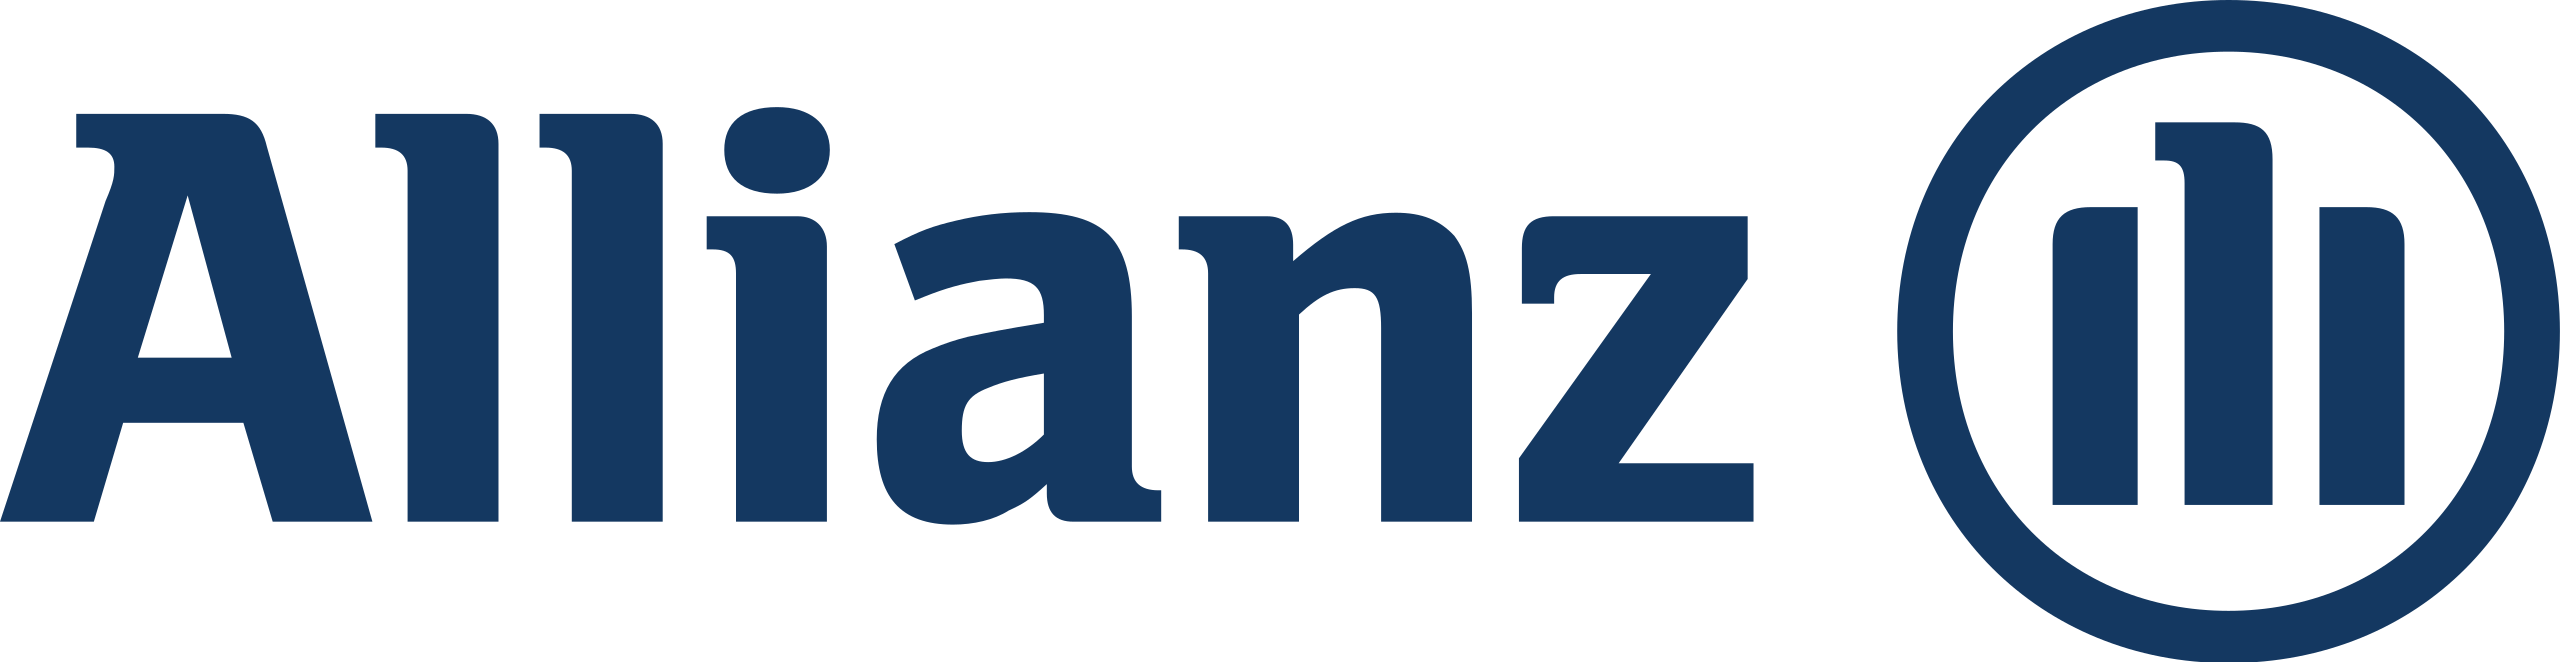 Allianz Assistance 